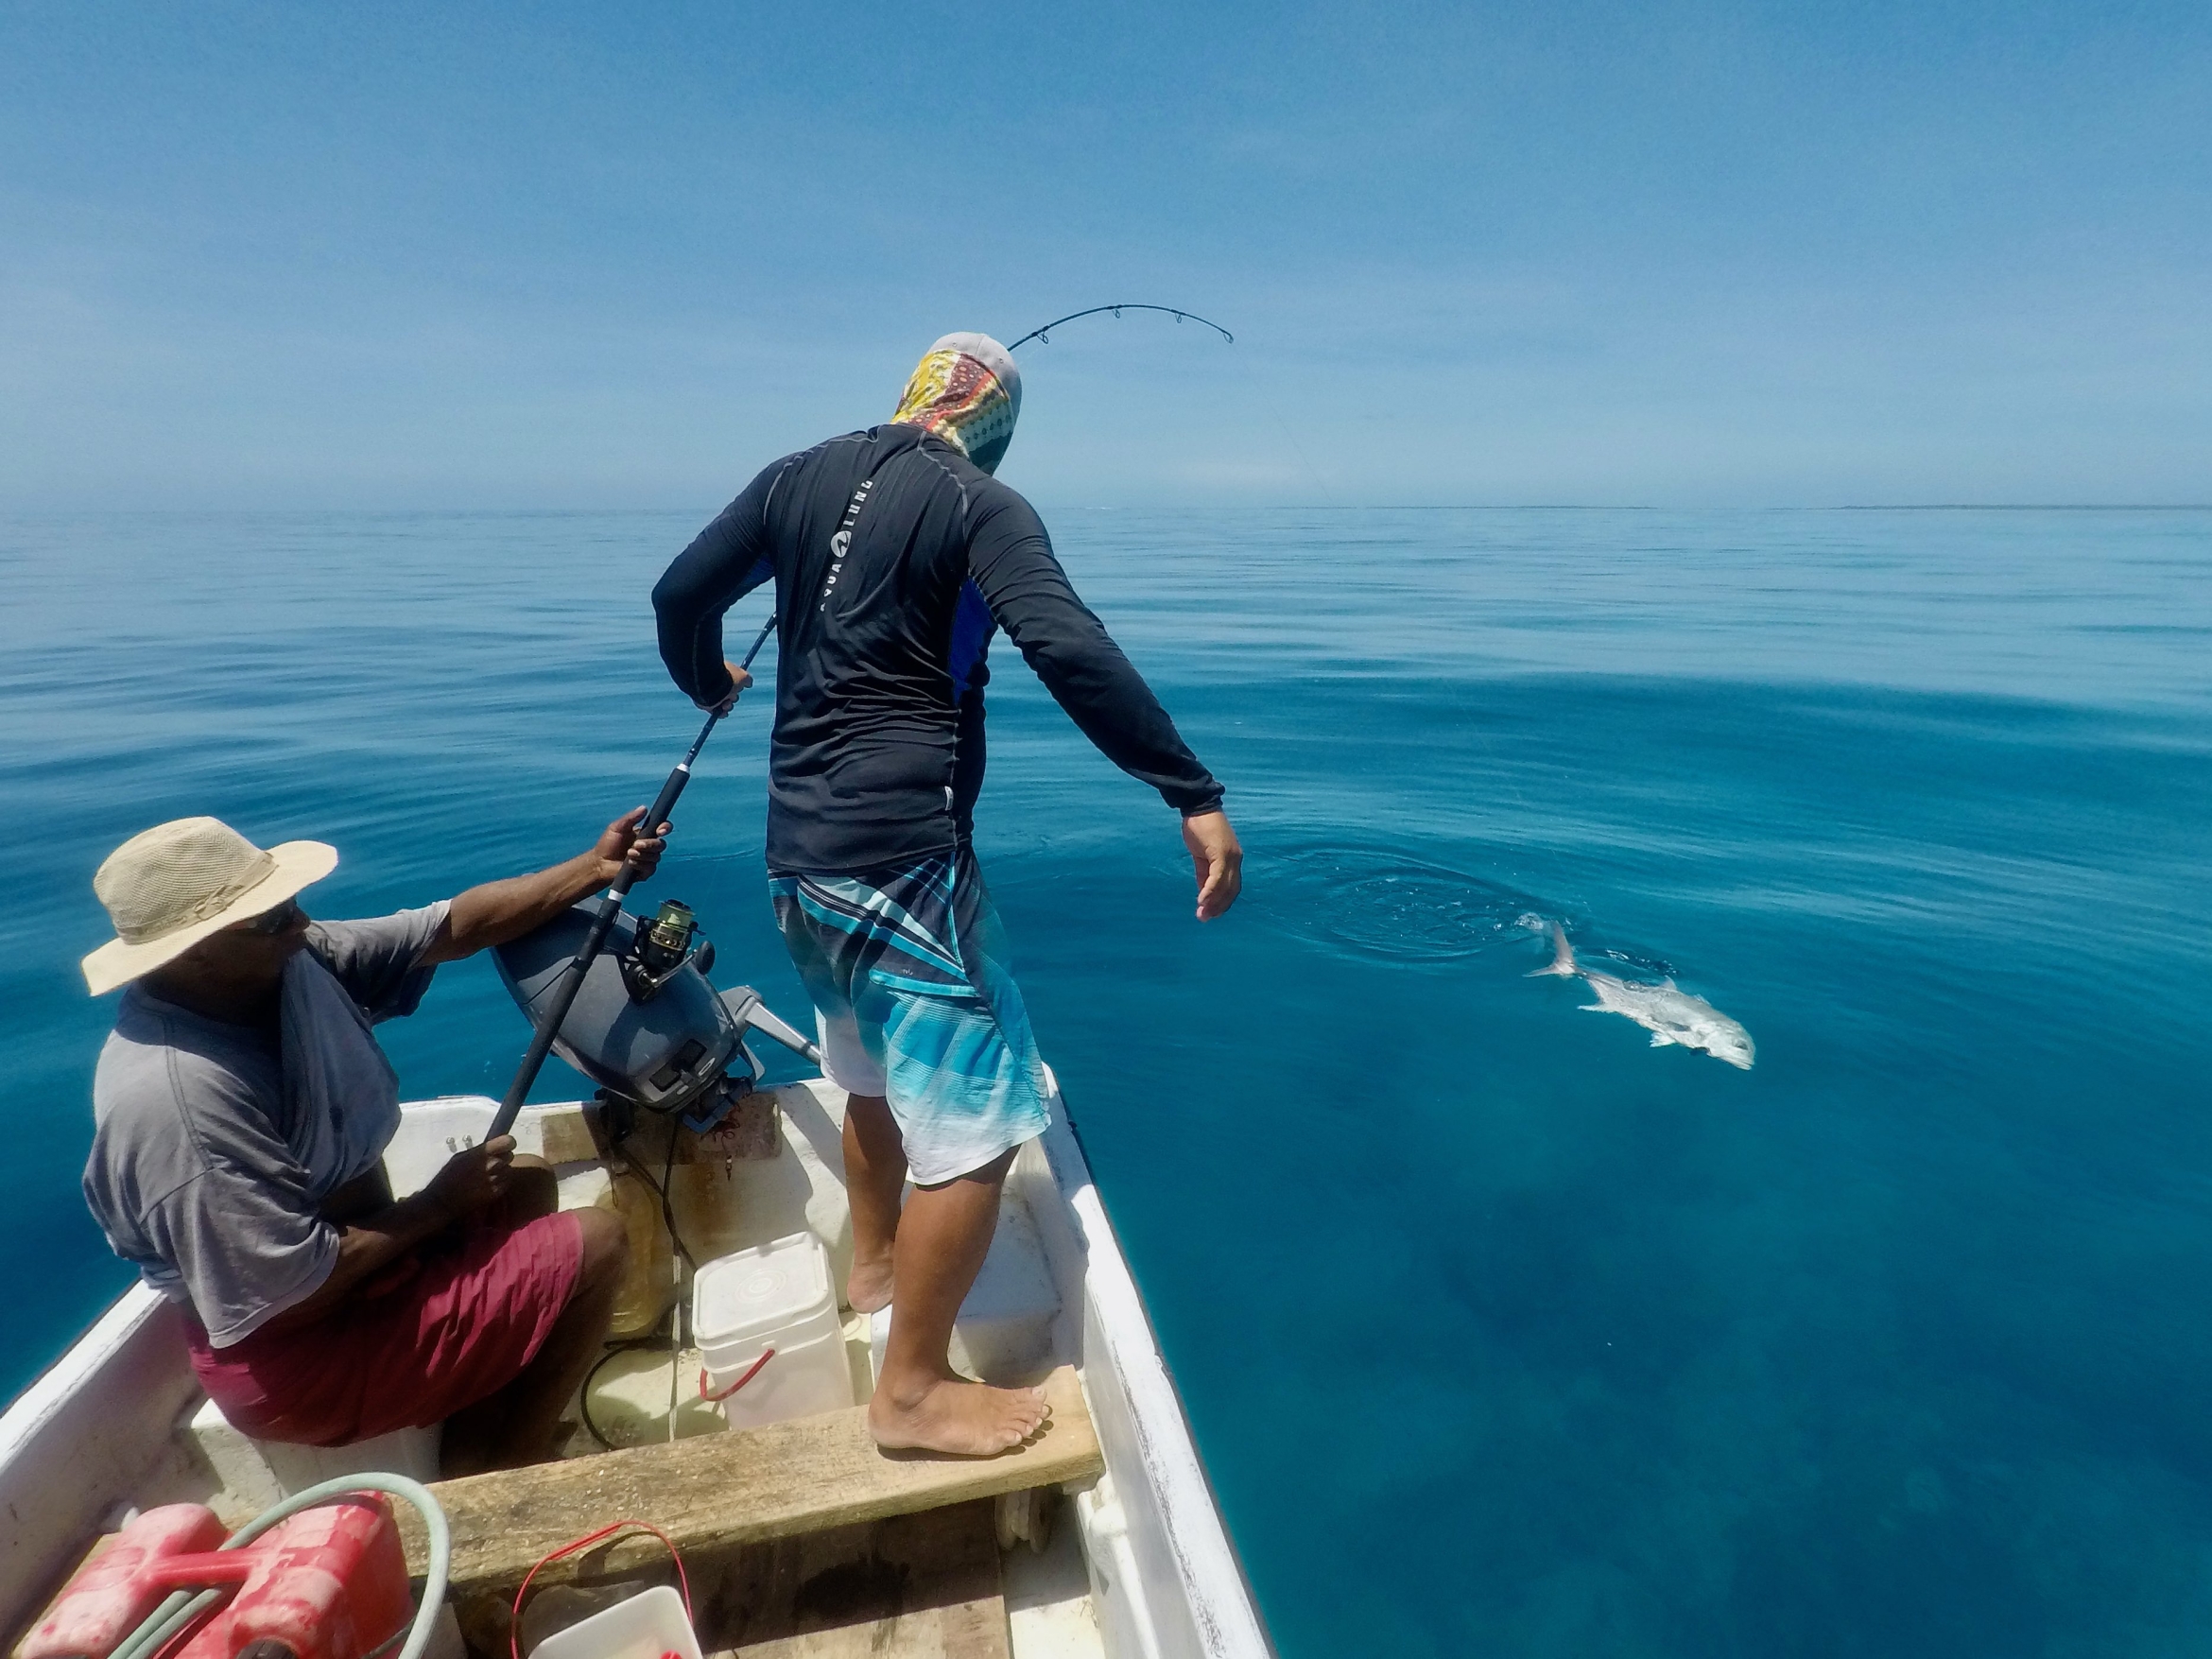 two fishers in Kiribati waters